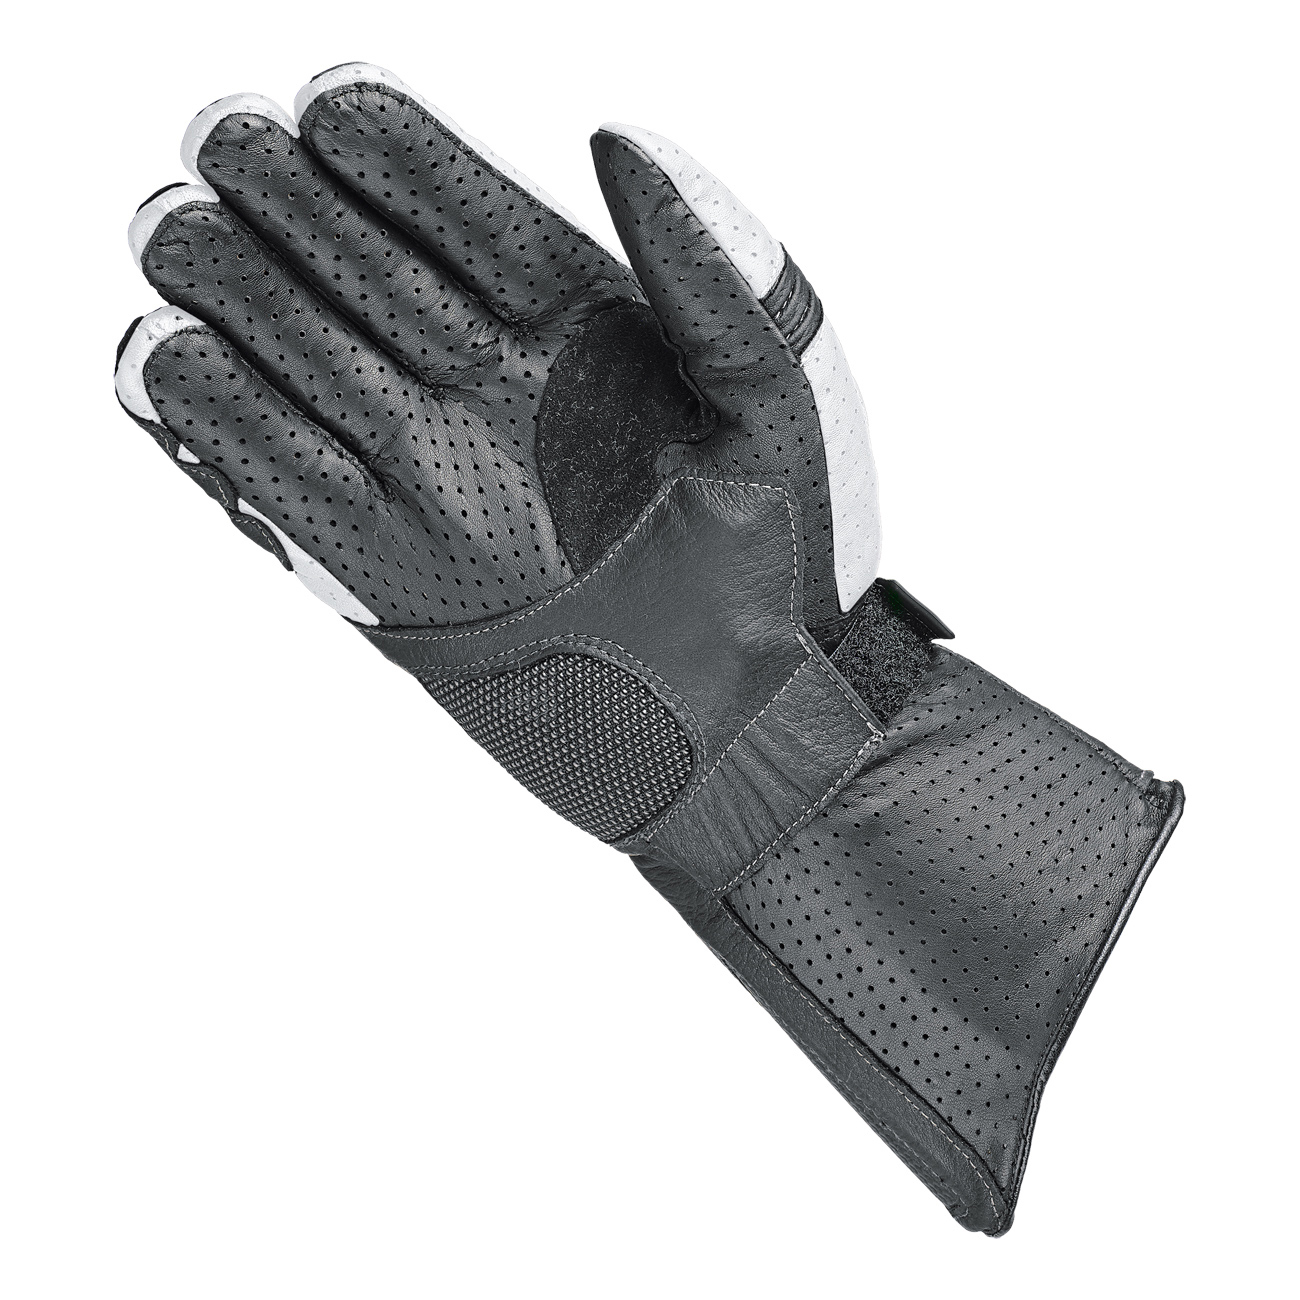 Phantom Air Sports gloves